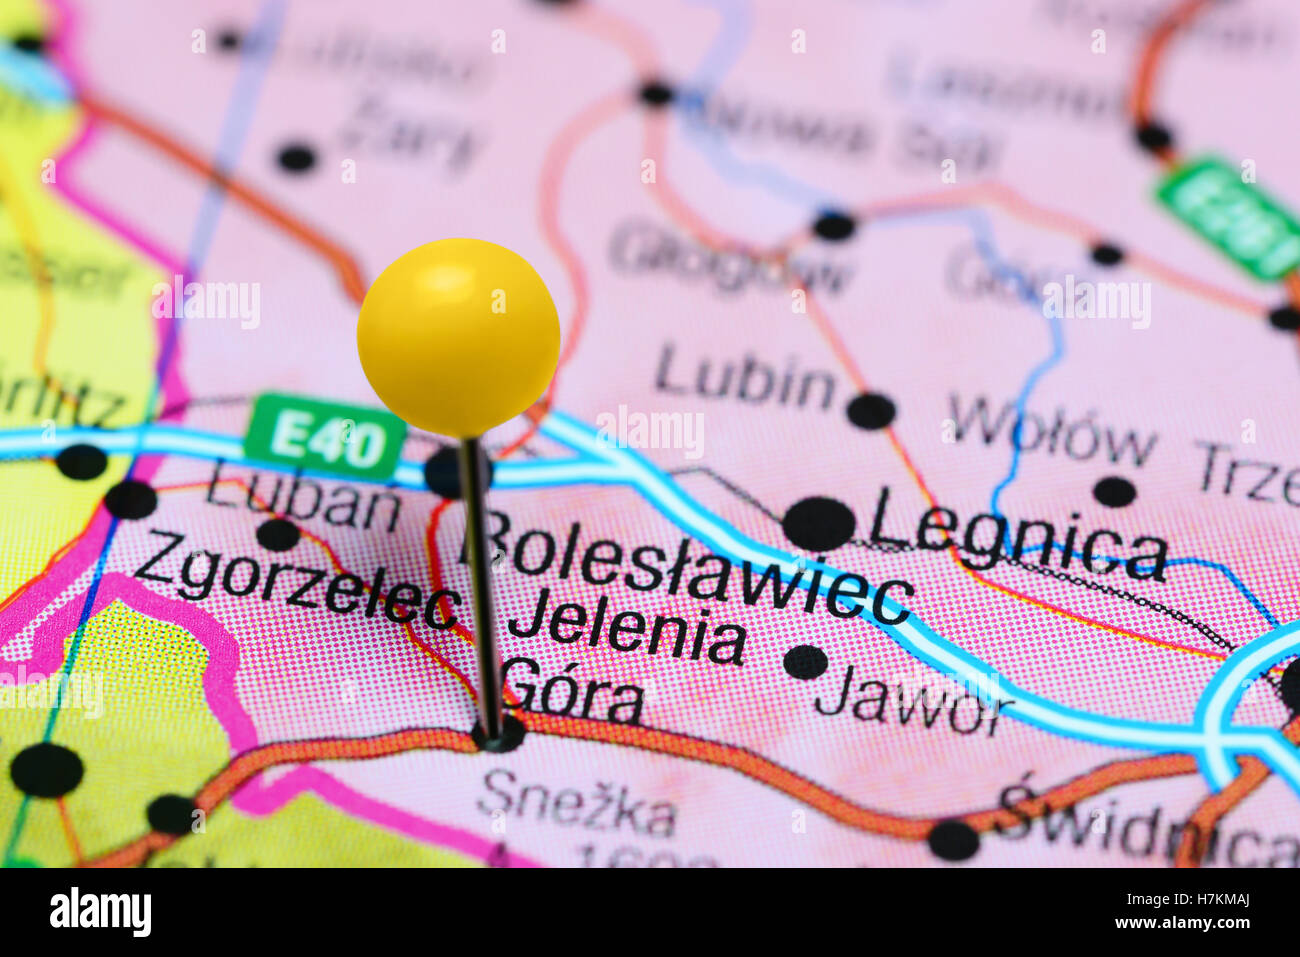 Jelenia Gora anclado en un mapa de Polonia Foto de stock